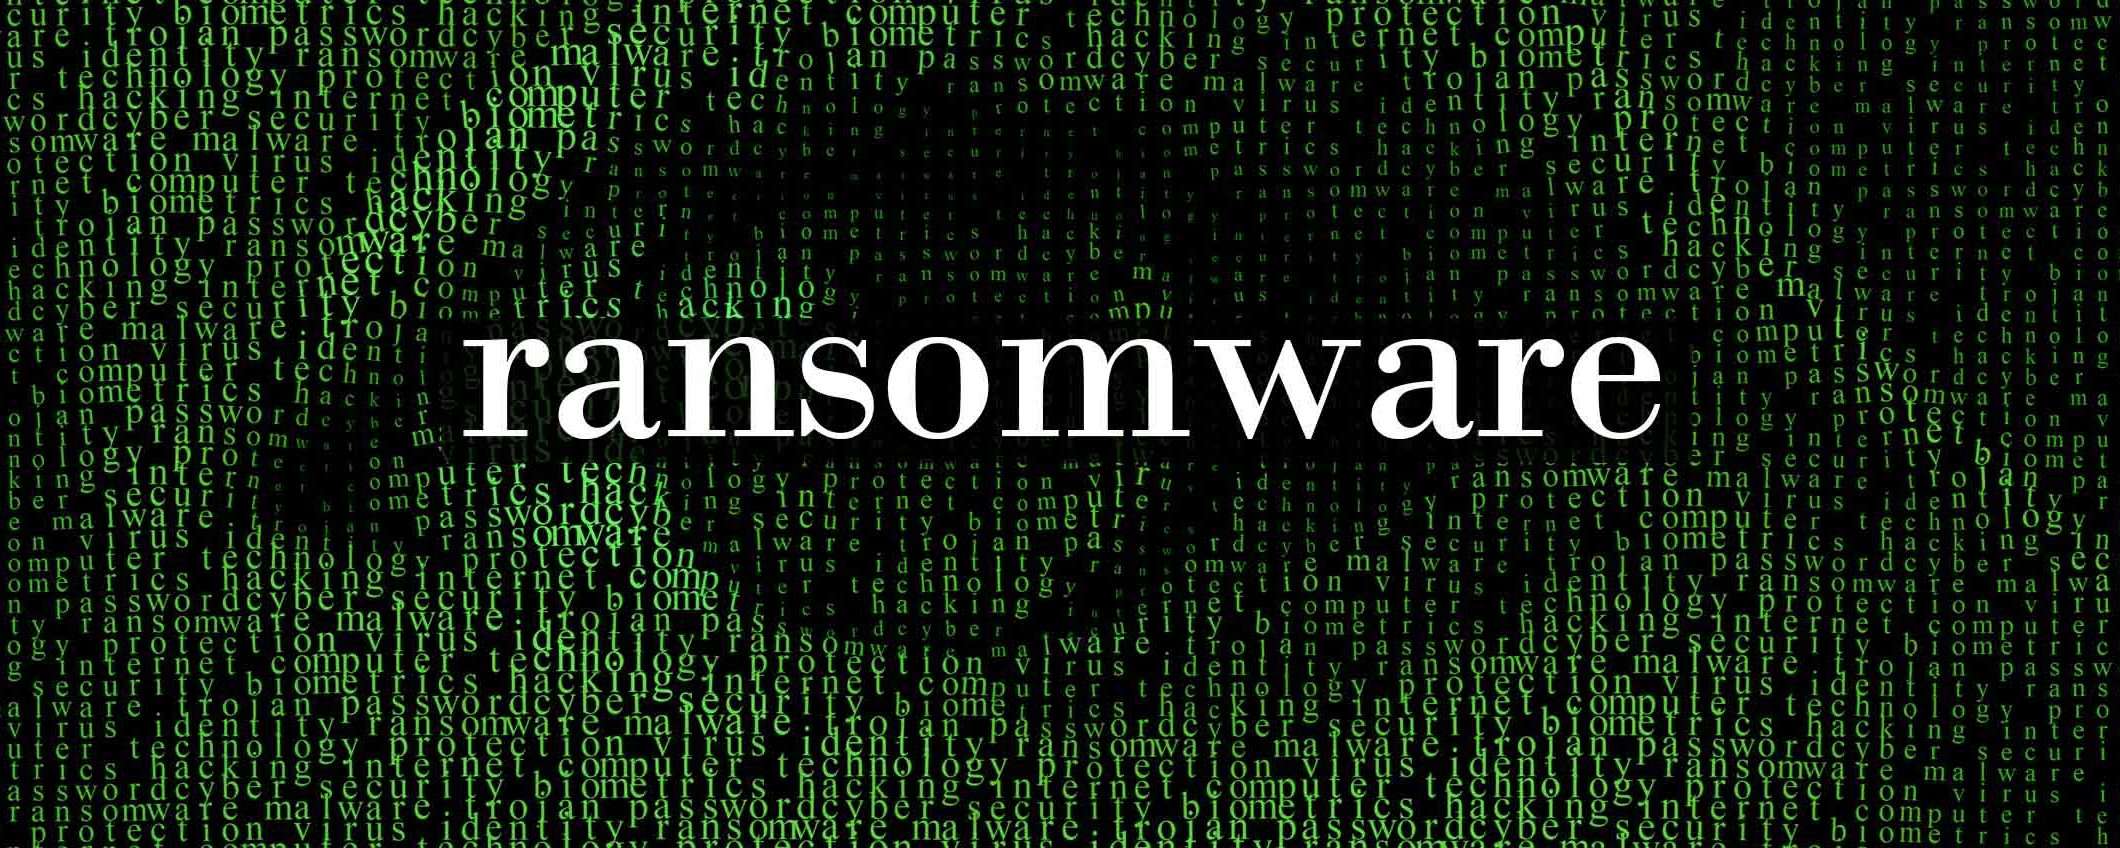 Cisco torna sull'attacco ransomware di Yanluowang